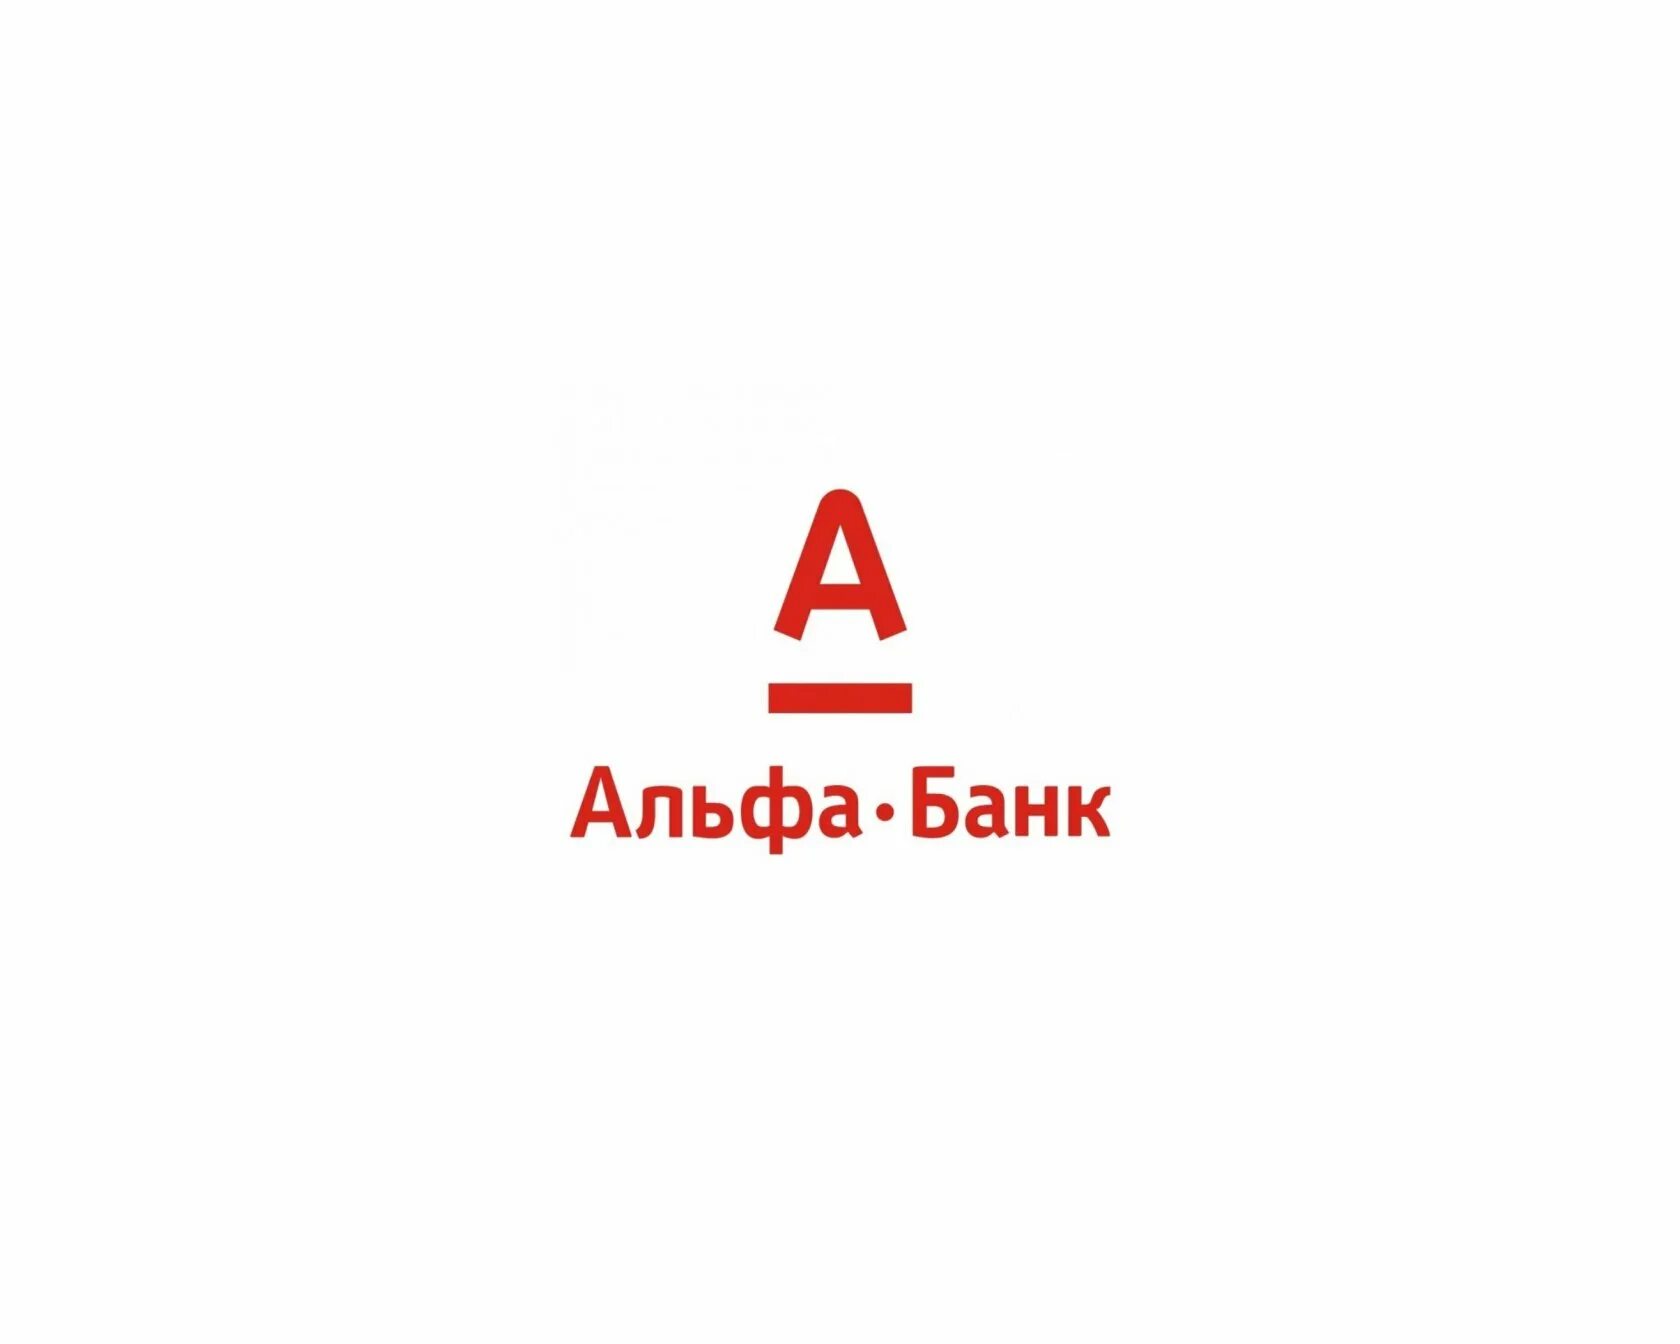 Эмблема Альфа банка. Альфа банк логотип на белом фоне. Алеф банк. Альфа банк иллюстрации. Альфабой